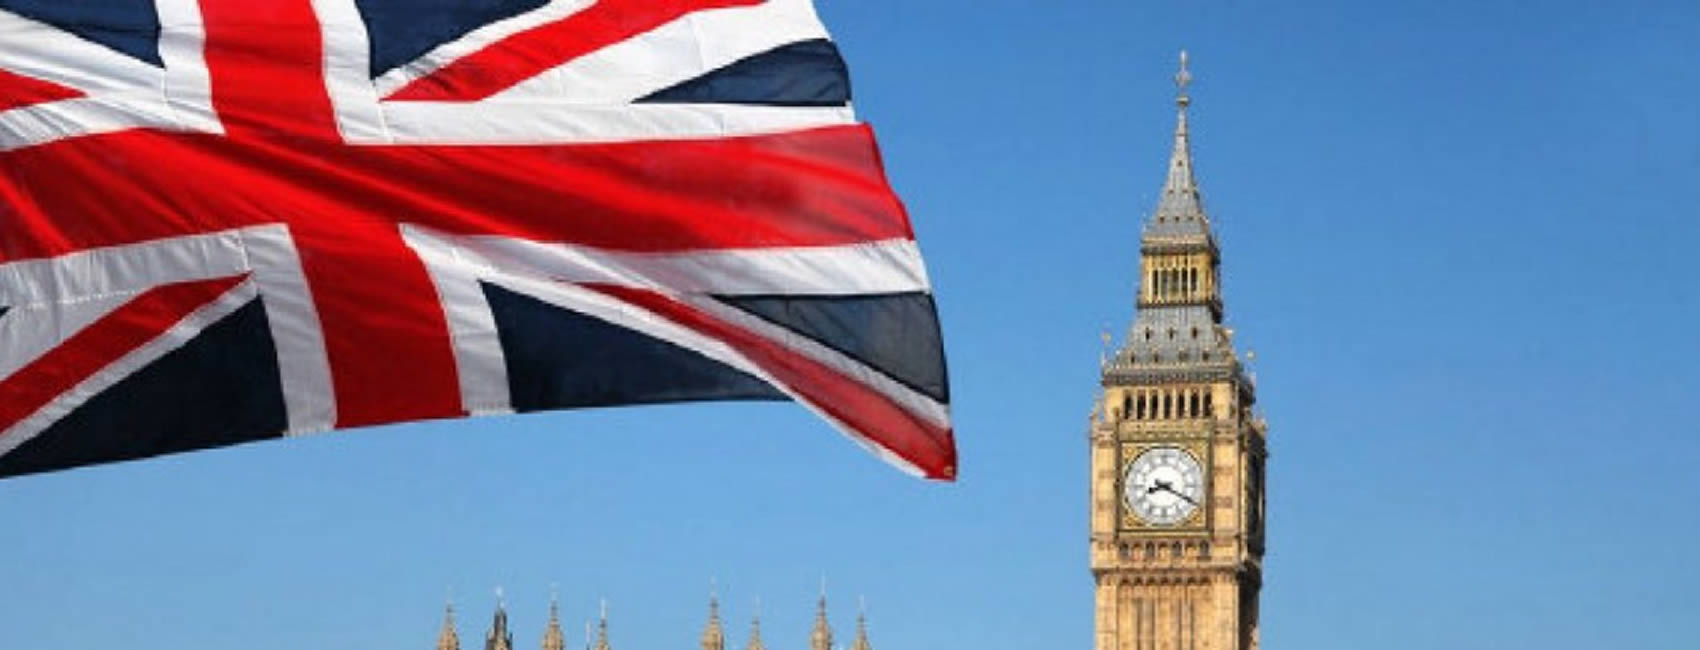 British flag London